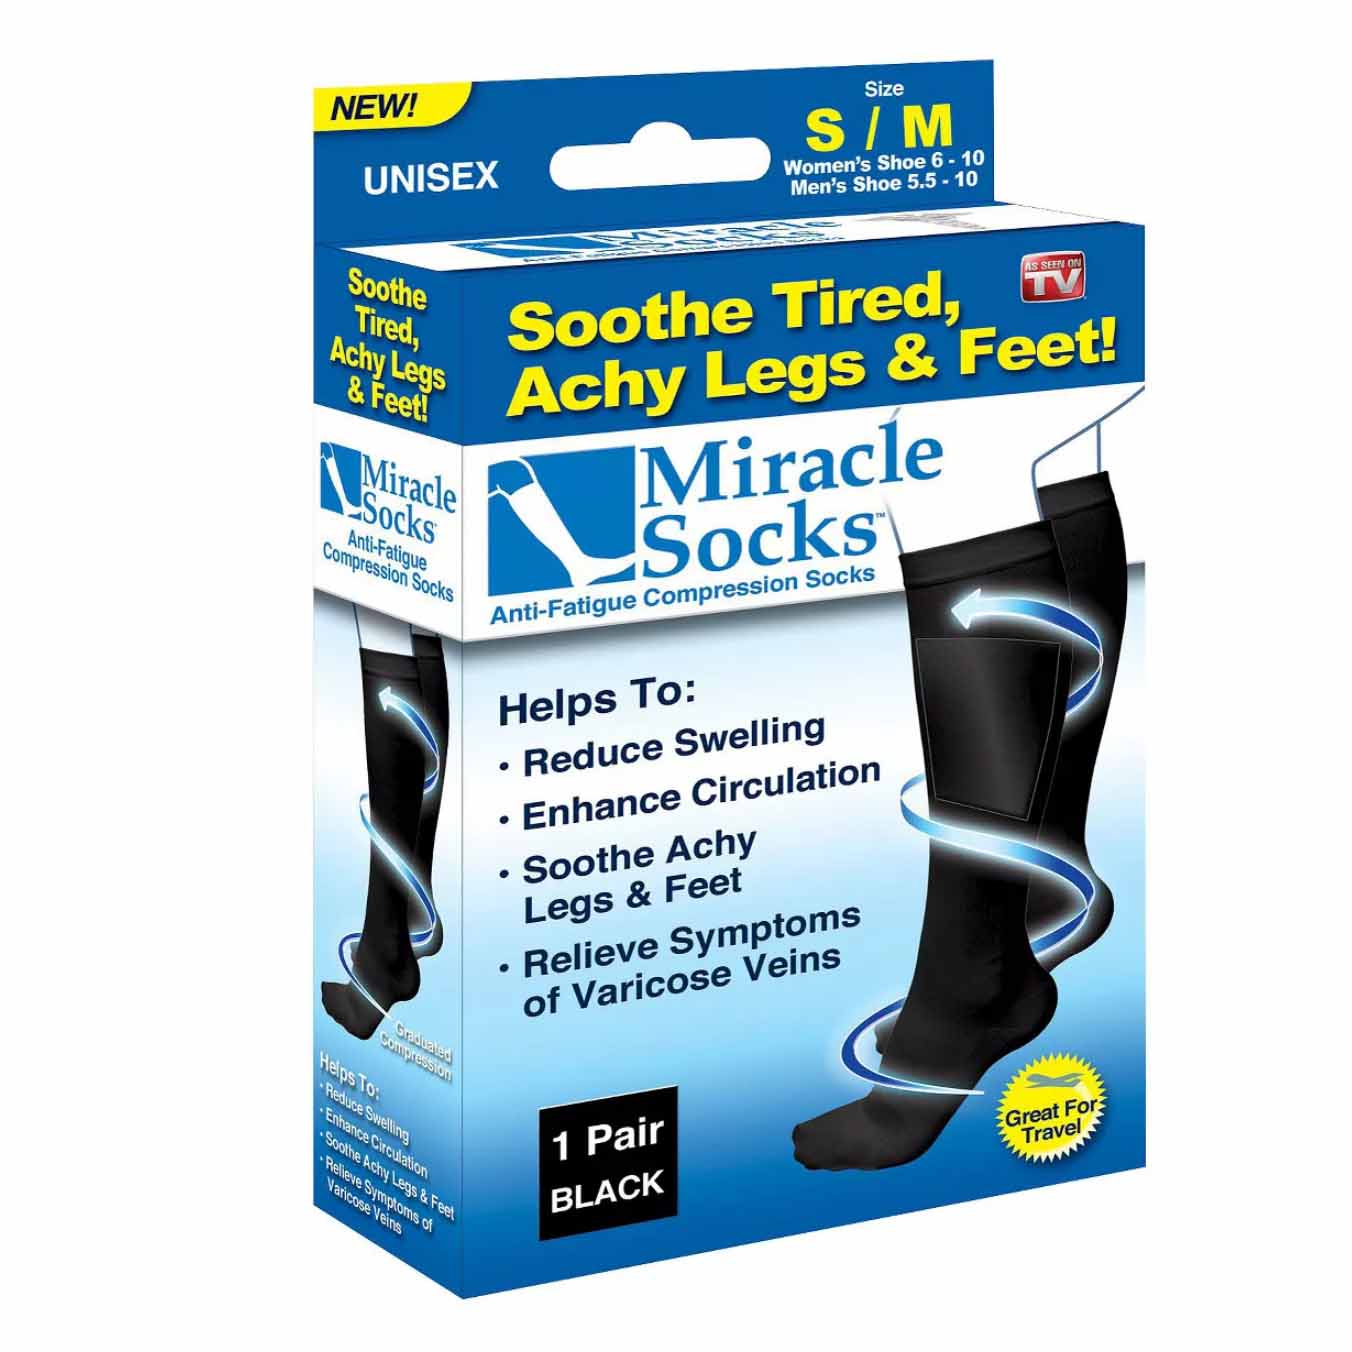 Miracle Socks in box packaging